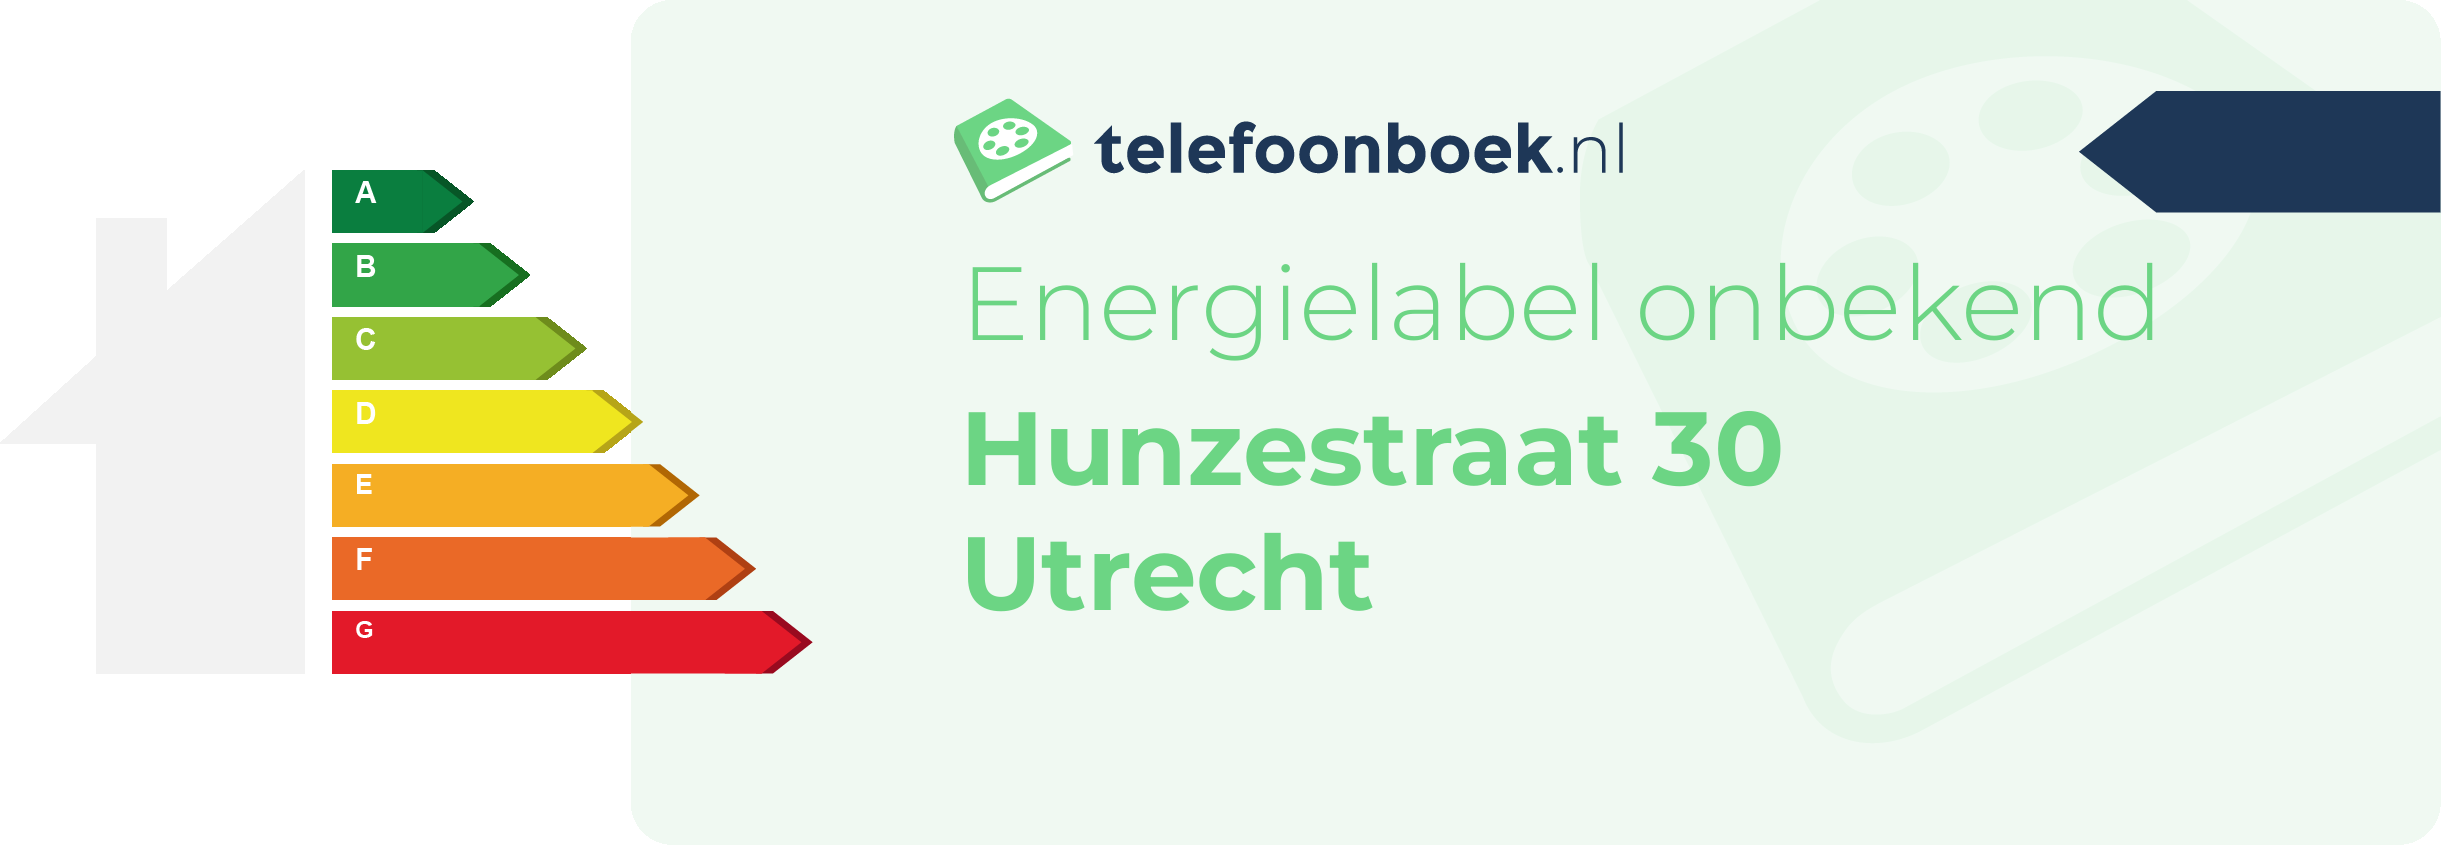 Energielabel Hunzestraat 30 Utrecht